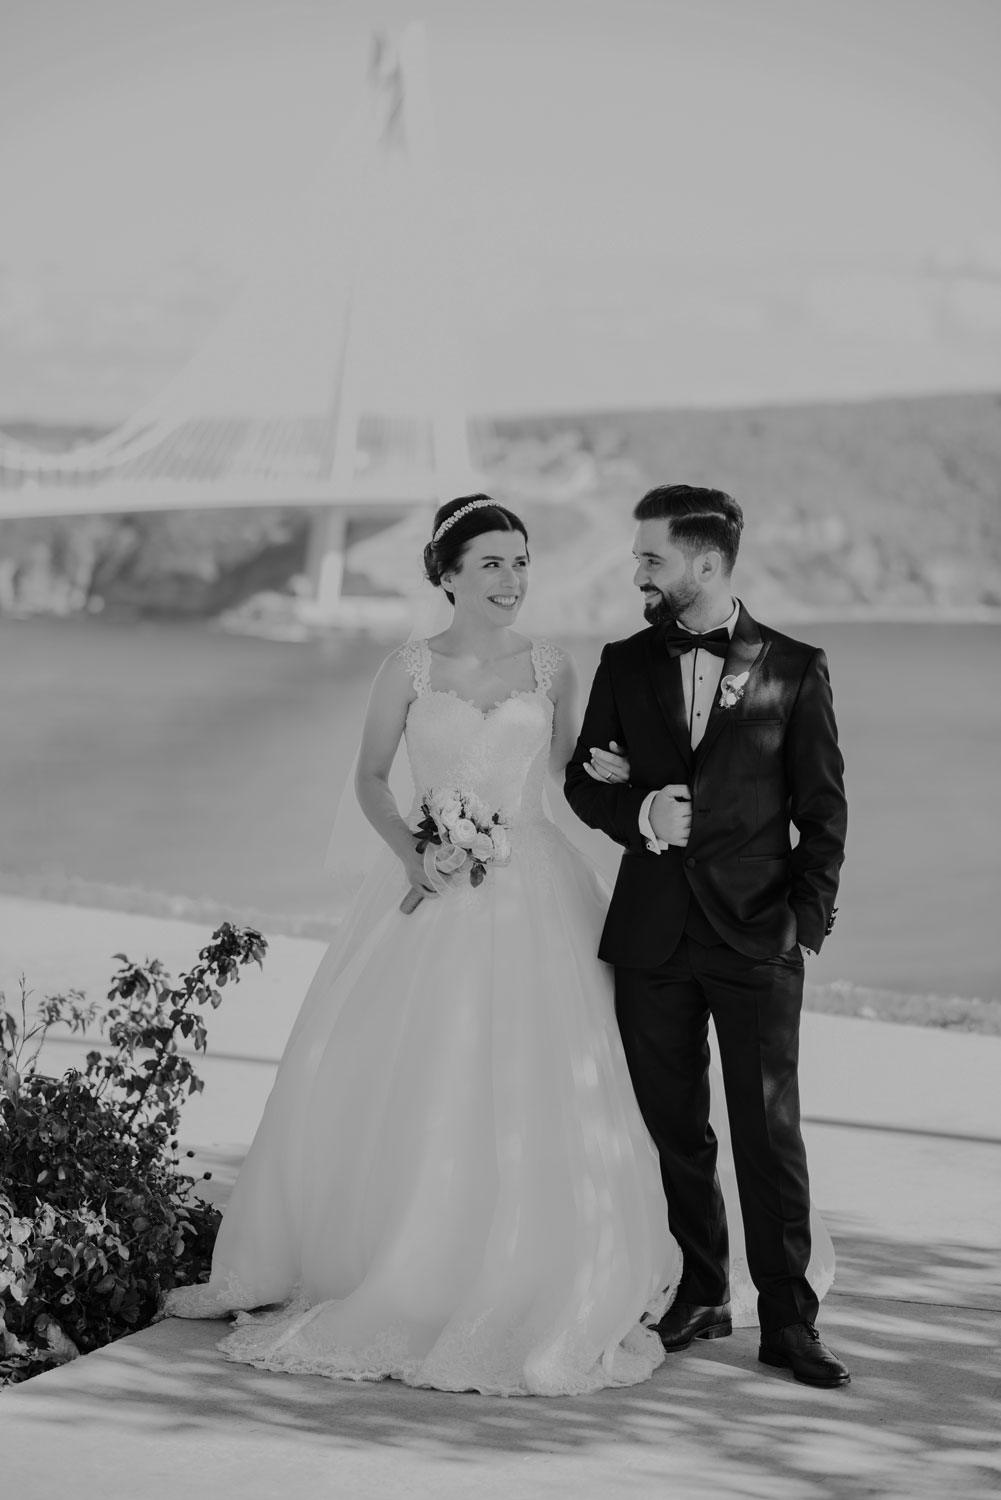 Rumeli feneri garipçeköy düğün nişan fotoğraf çekimi düğün fotoğrafçisi